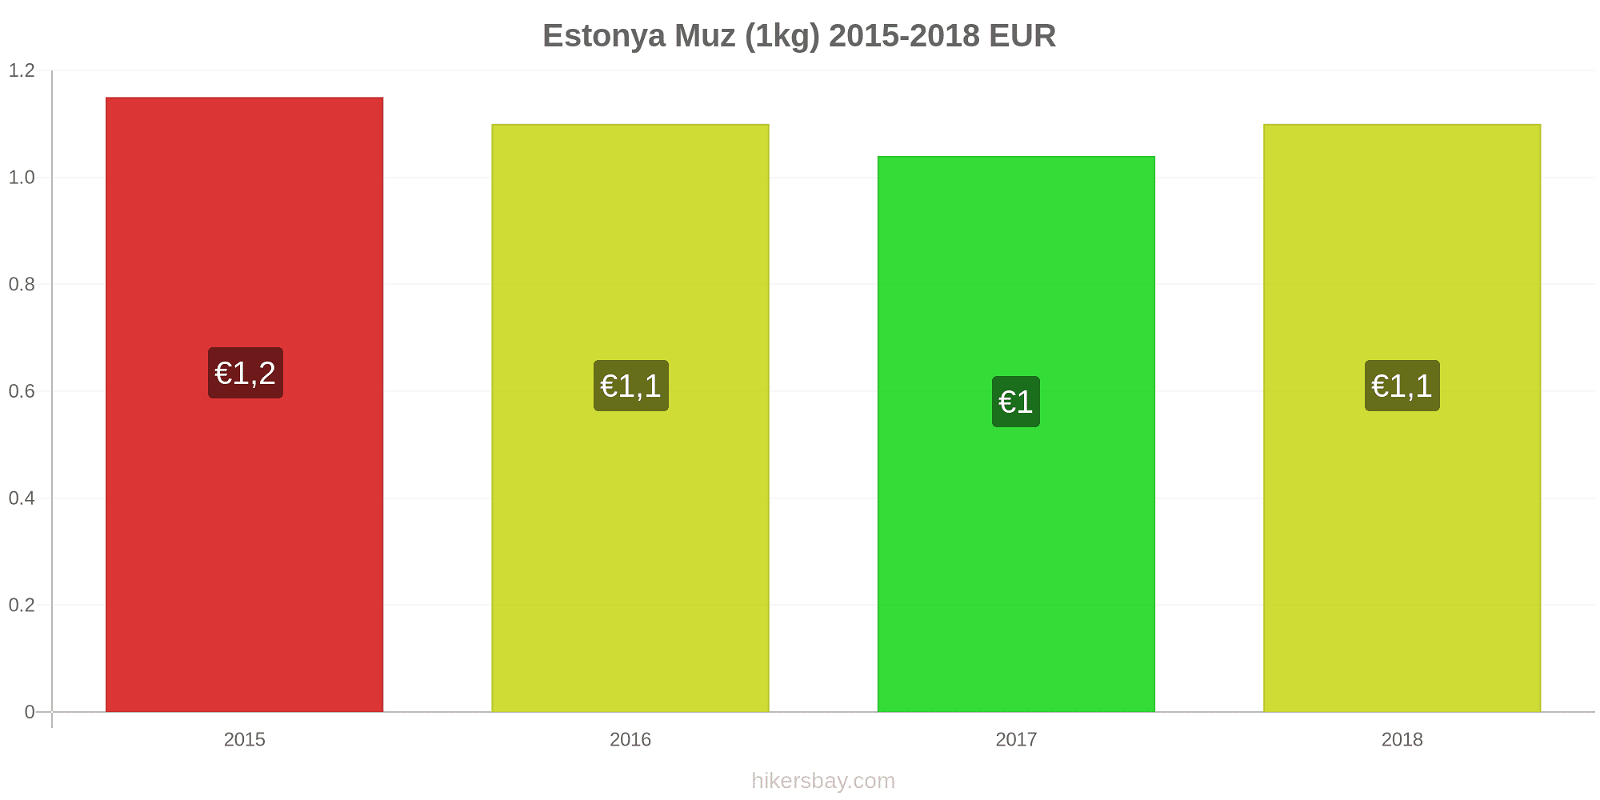 Estonya fiyat değişiklikleri Muzlar (1kg) hikersbay.com